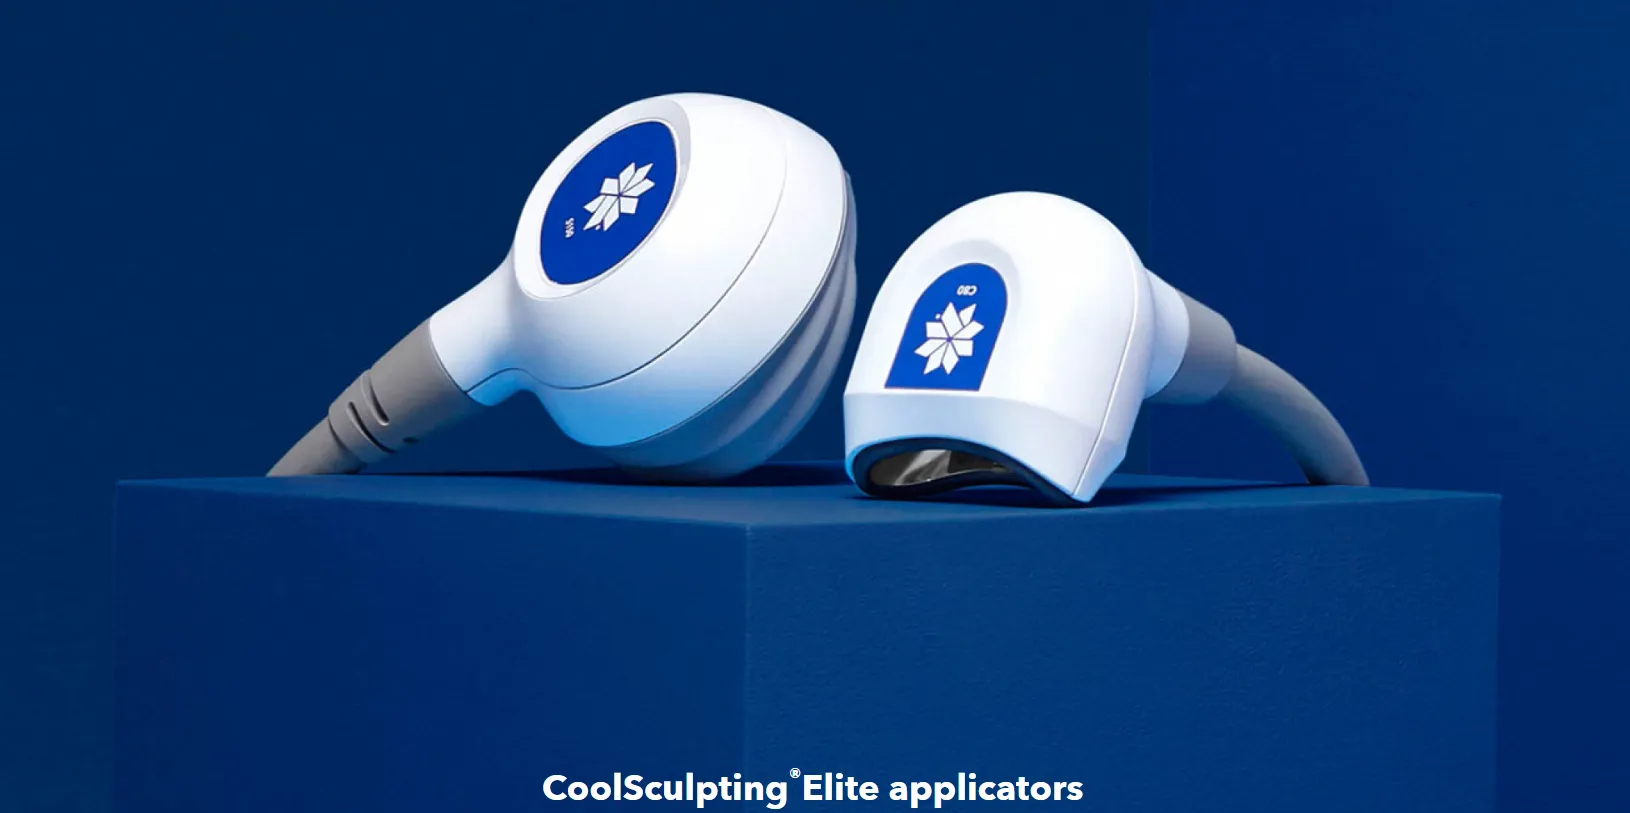 coolsculpting elite ต่างจาก coolsculpting รุ่นเดิมอย่างไร